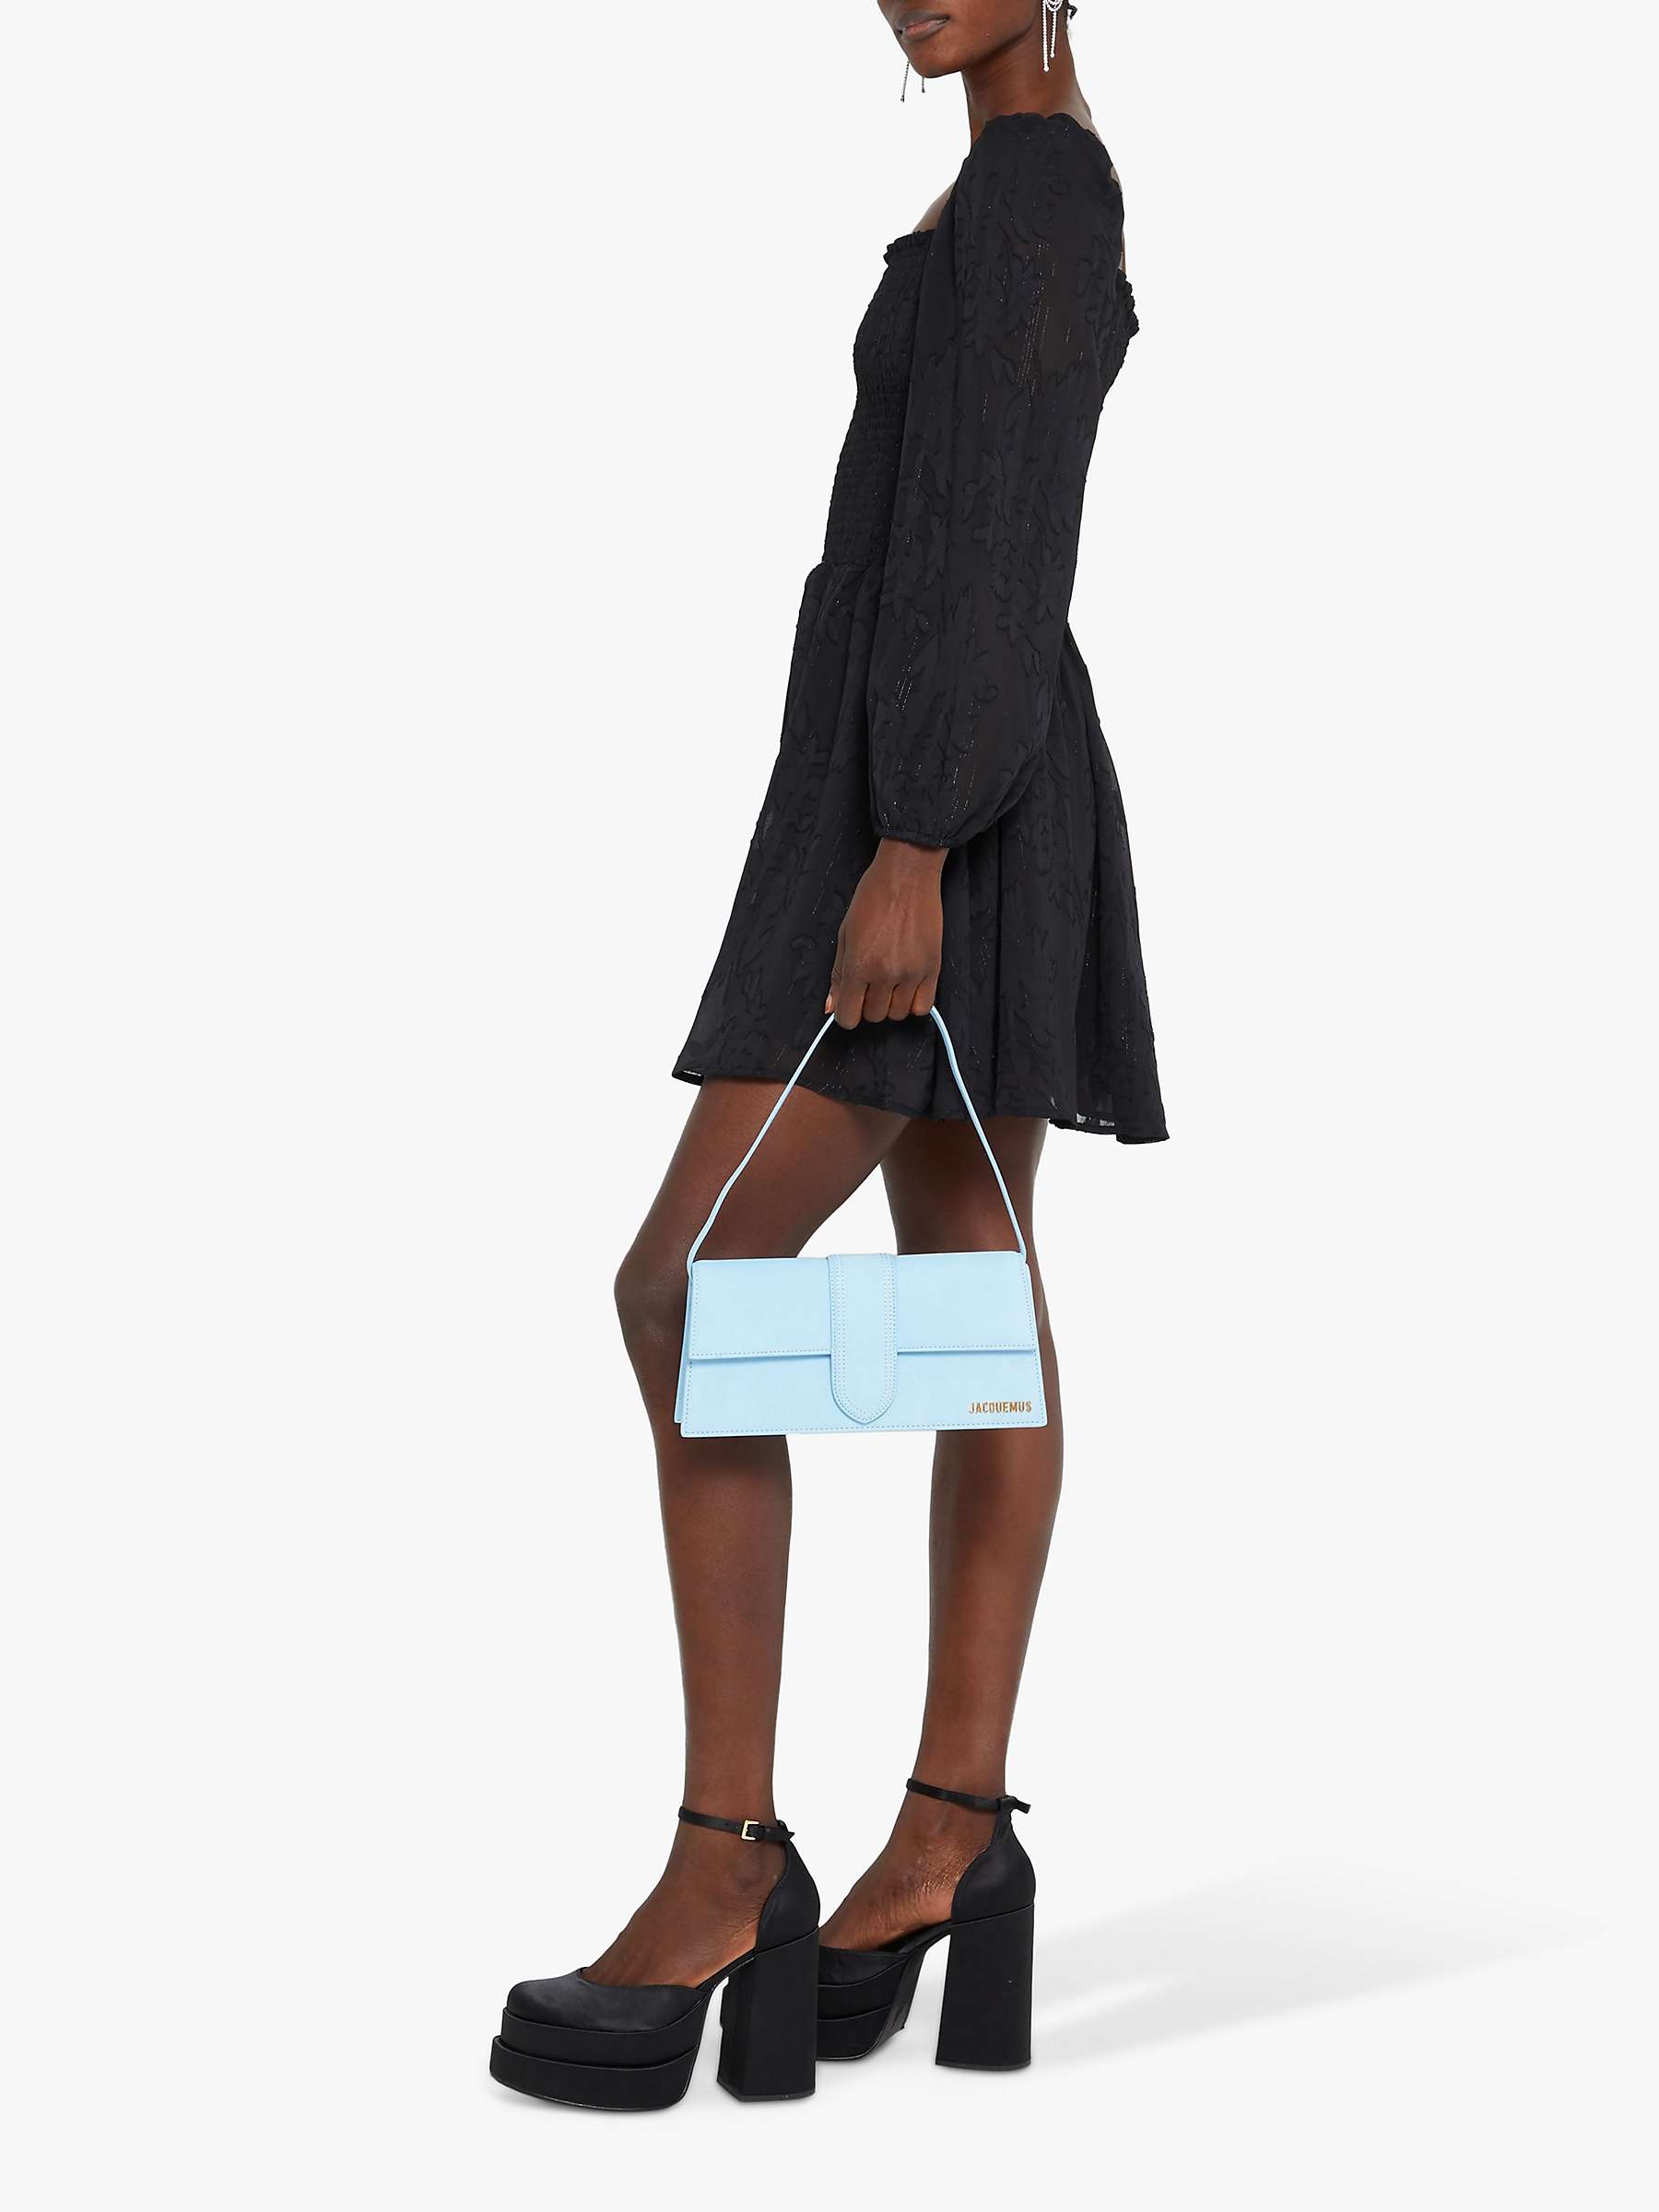 Buy kourt Wren Fitted Bodice Mini Dress, Black Online at johnlewis.com